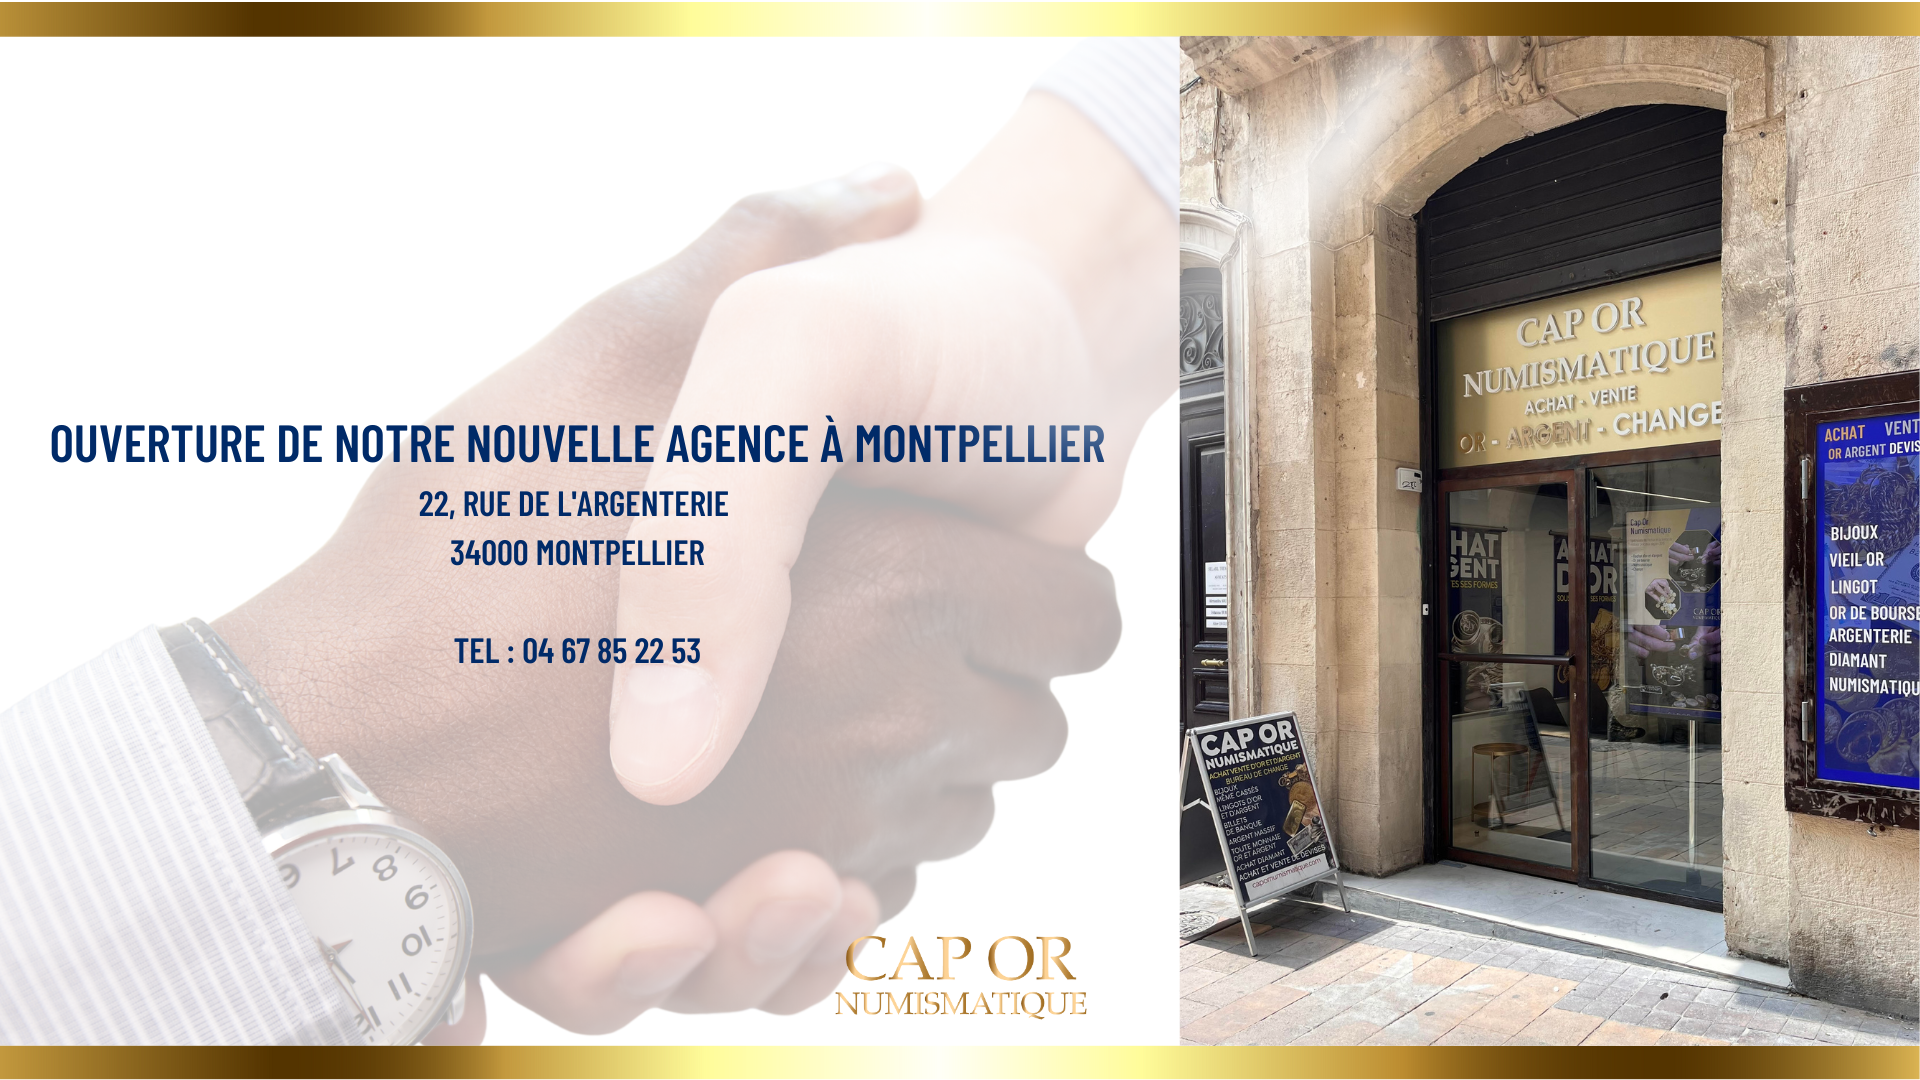 Notre nouvelle agence à Montpellier